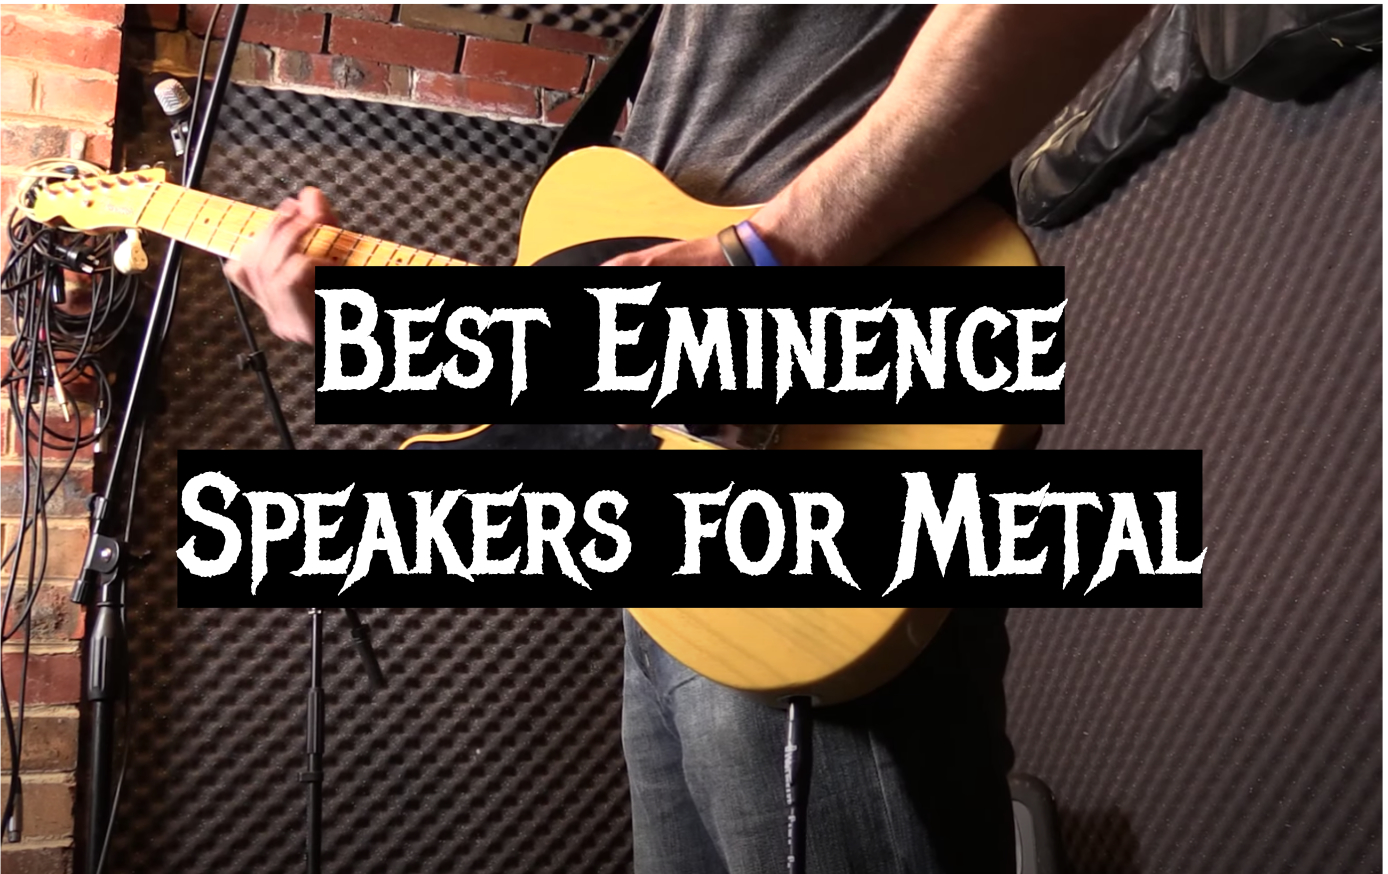 guitar speakers for metal